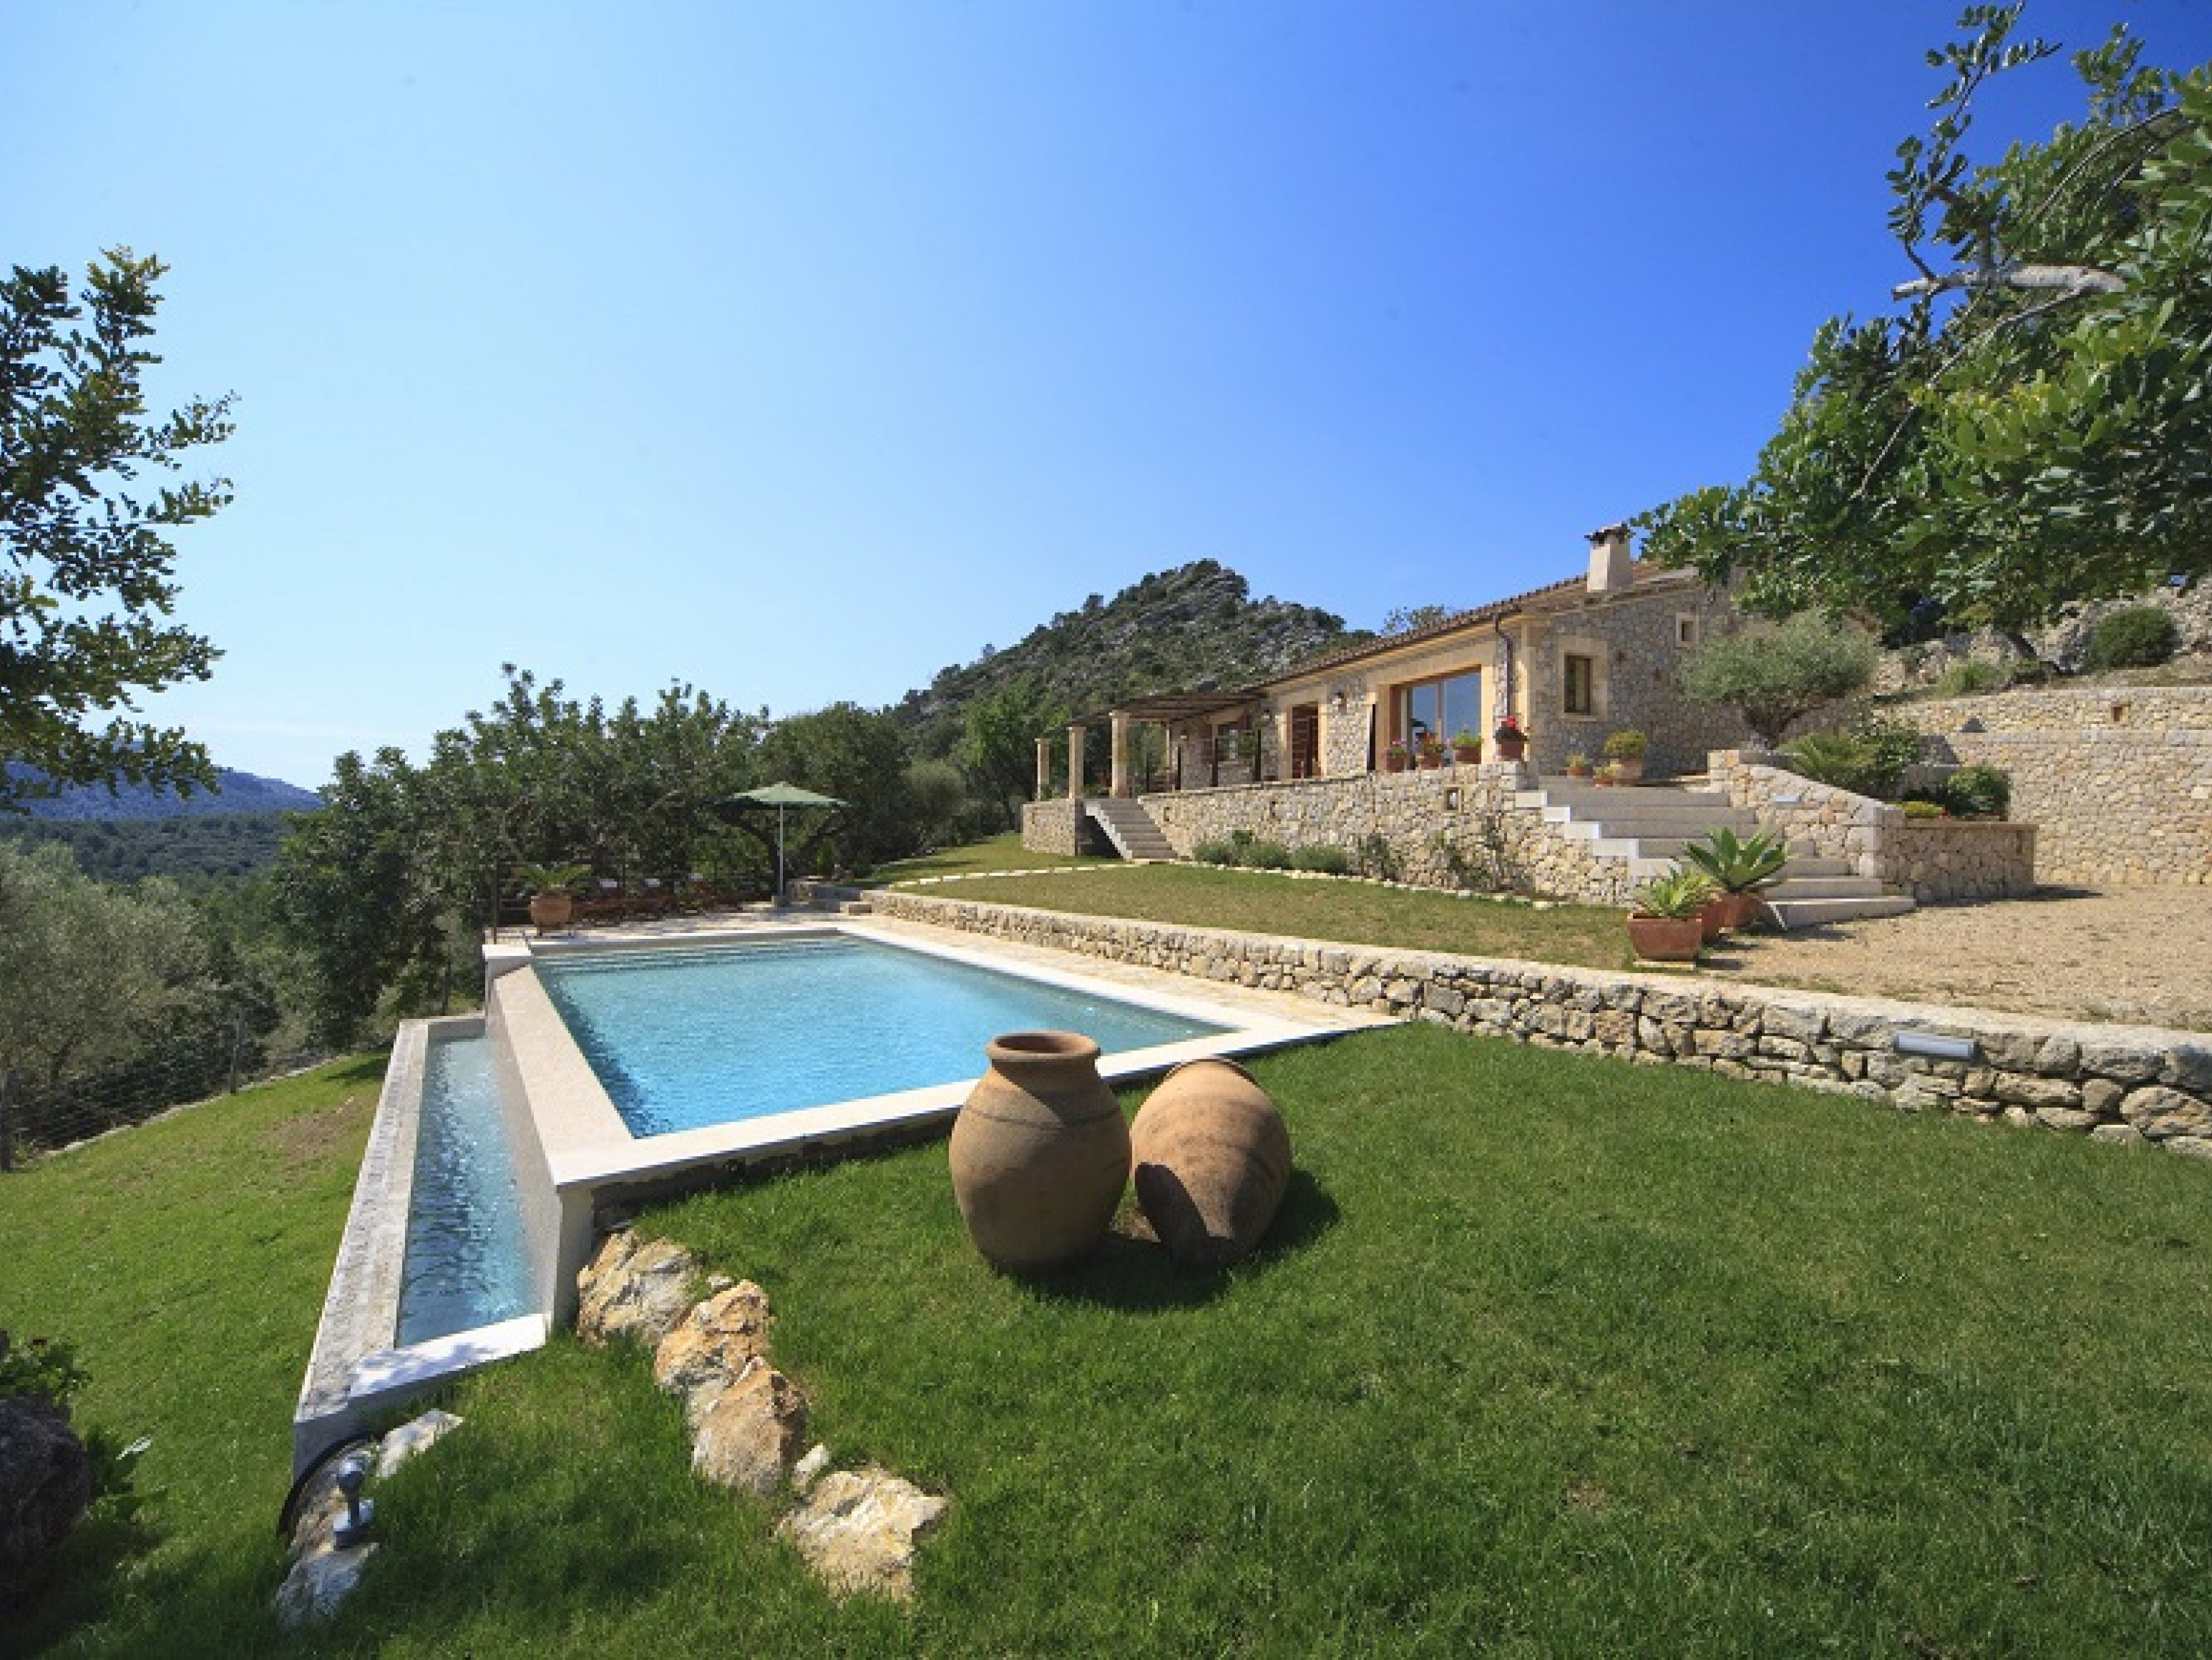 La Salve D Alt - Majorca holiday villas with pools